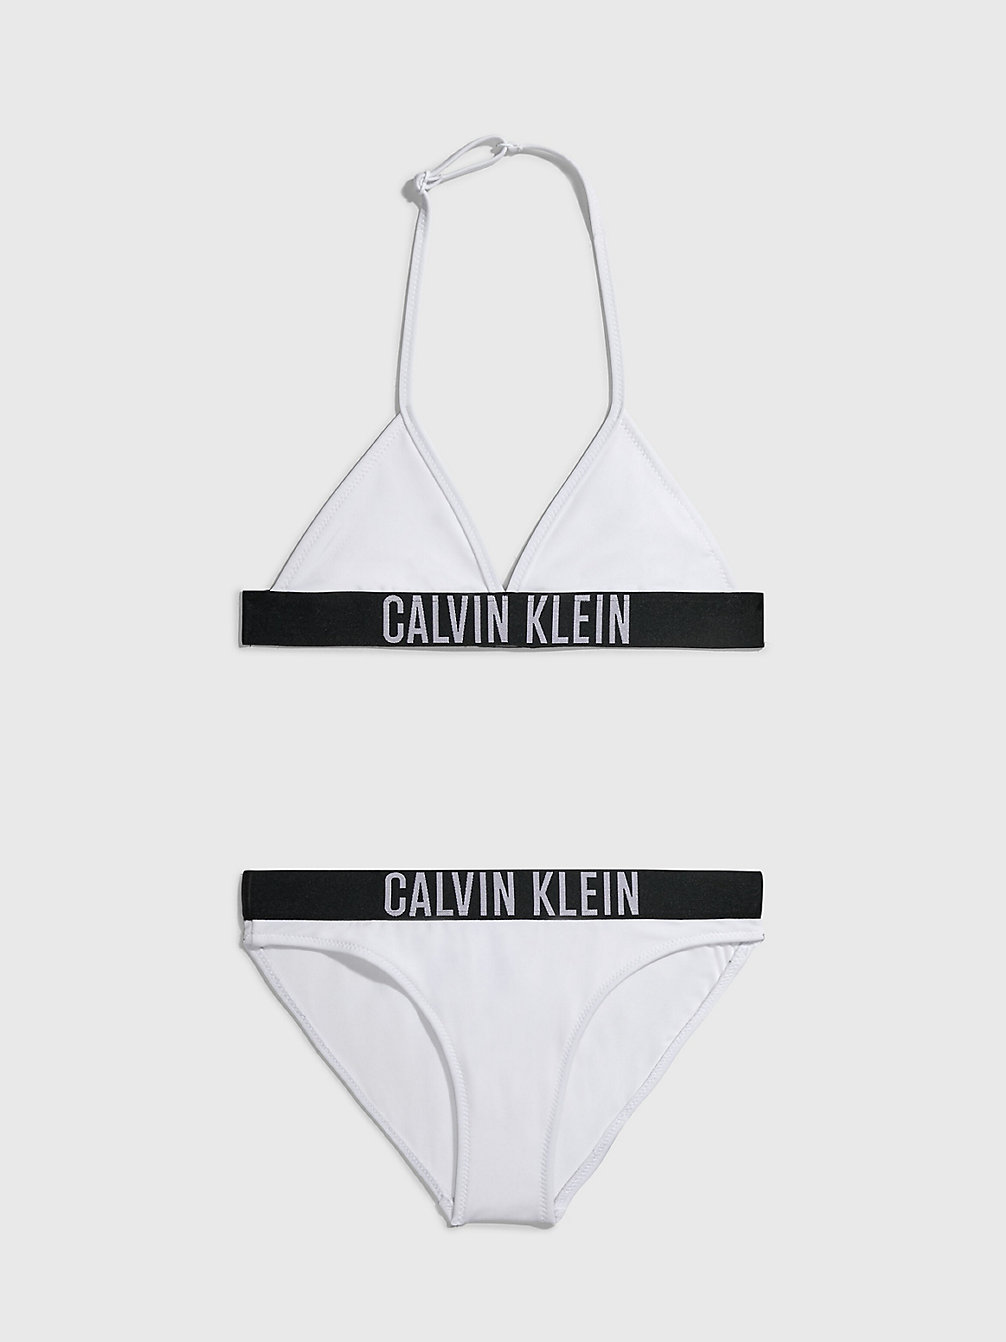 PVH CLASSIC WHITE > Dziewczęcy Dwuczęściowy Strój Kąpielowy Z Trójkątnym Bikini - Intense Power > undefined girls - Calvin Klein